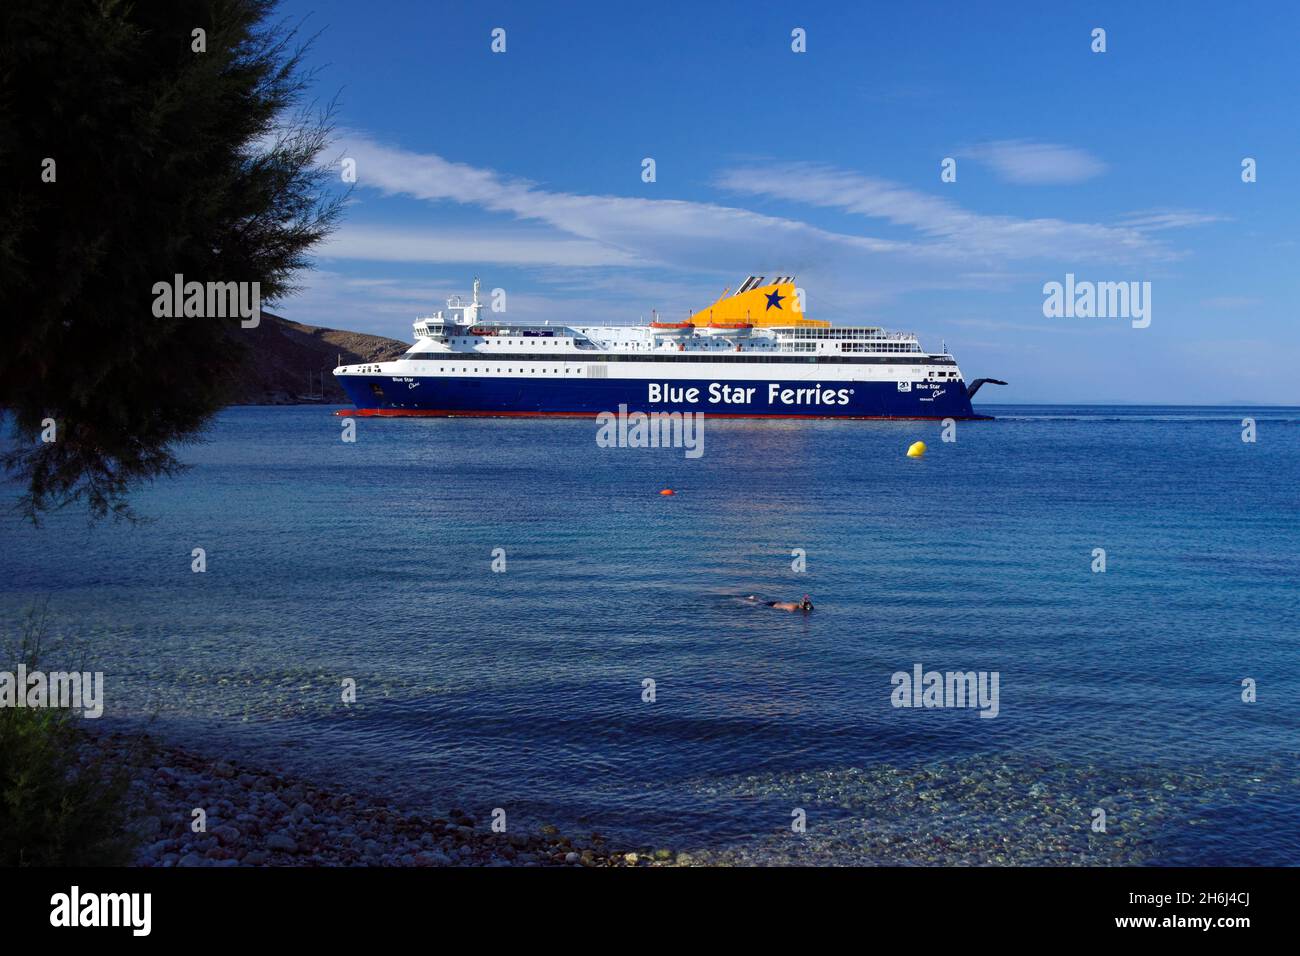 Blue Star Ferries navire le Chios arrivant au port de Livadia, Tilos, îles Dodécanèse, sud de la mer Égée, Grèce. Banque D'Images